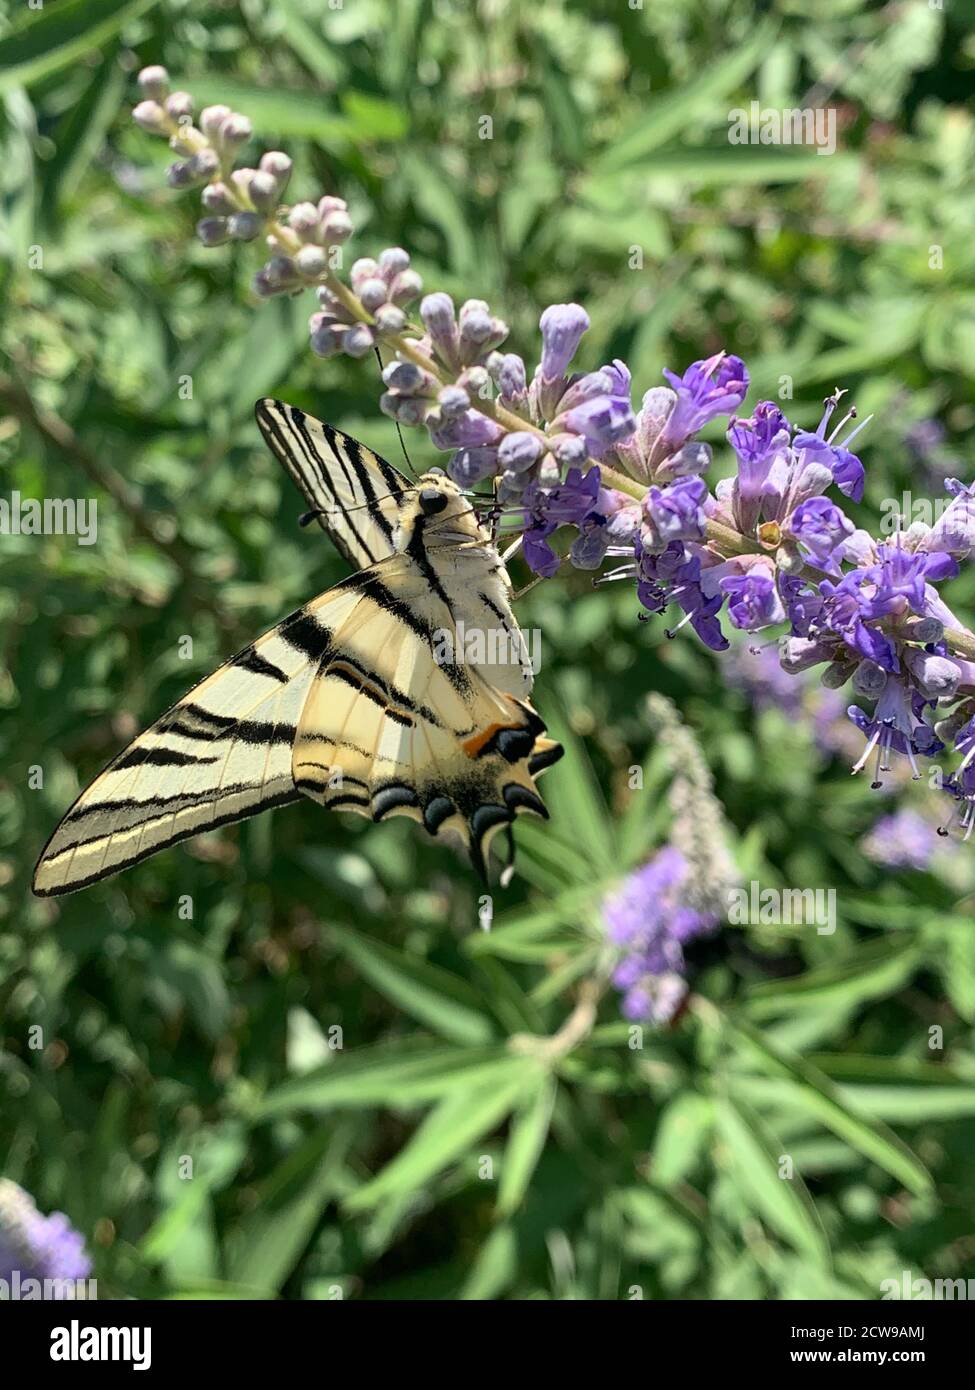 Gelber Schwalbenschwanz Schmetterling frisst Nektar von Feldblumen. Iphiclides podalirius aus der Familie Papilionidae. Großer, unverwechselbarer Schmetterling. Stockfoto